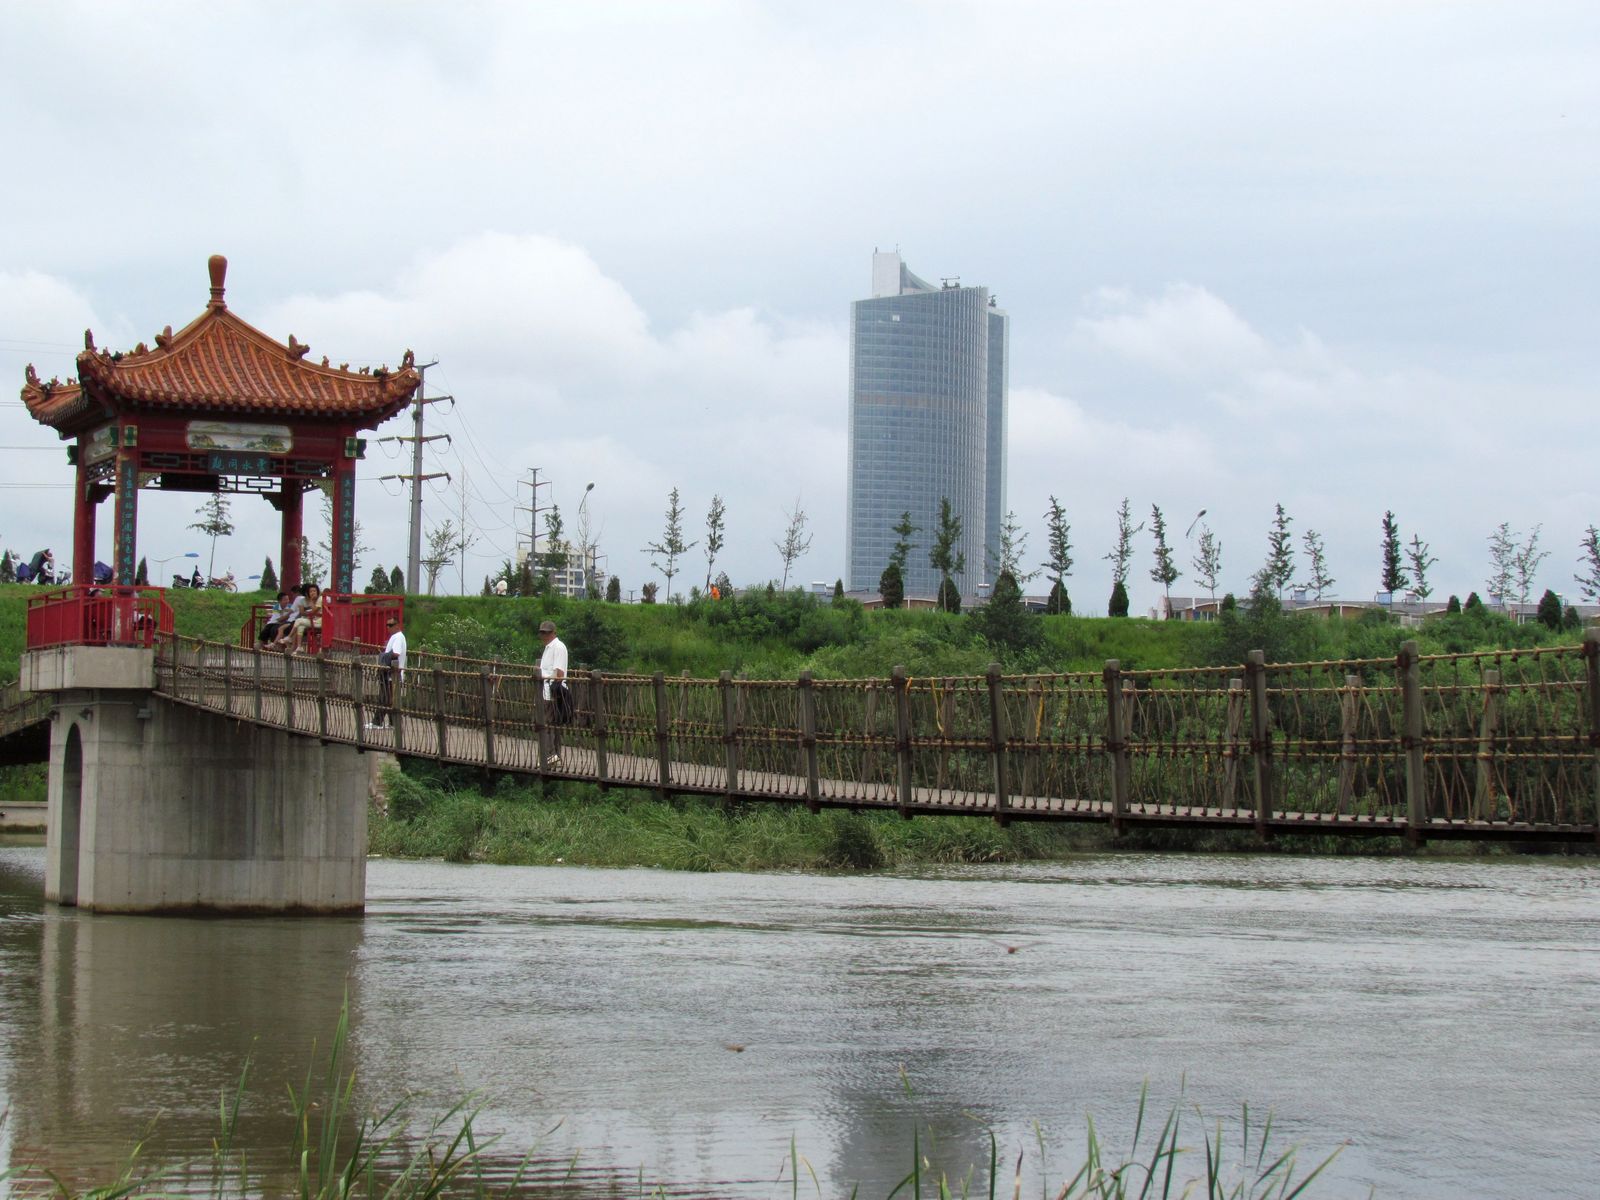 “共建清洁美丽世界”——锦州万名志愿者清洁母亲河